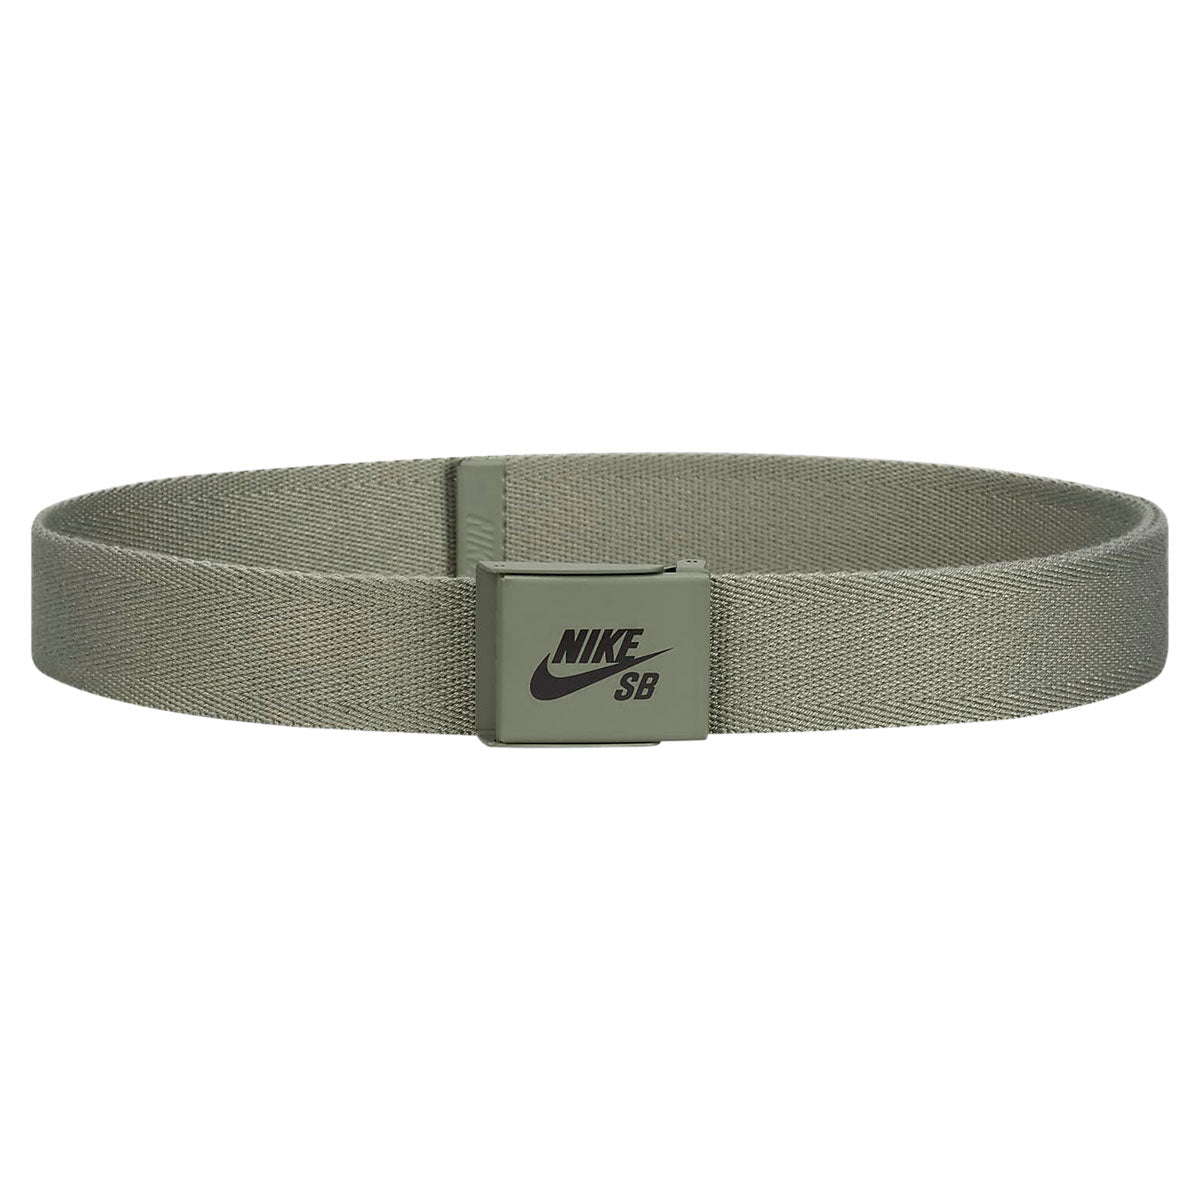 Nike SB Solid Web Belt - Olive image 1